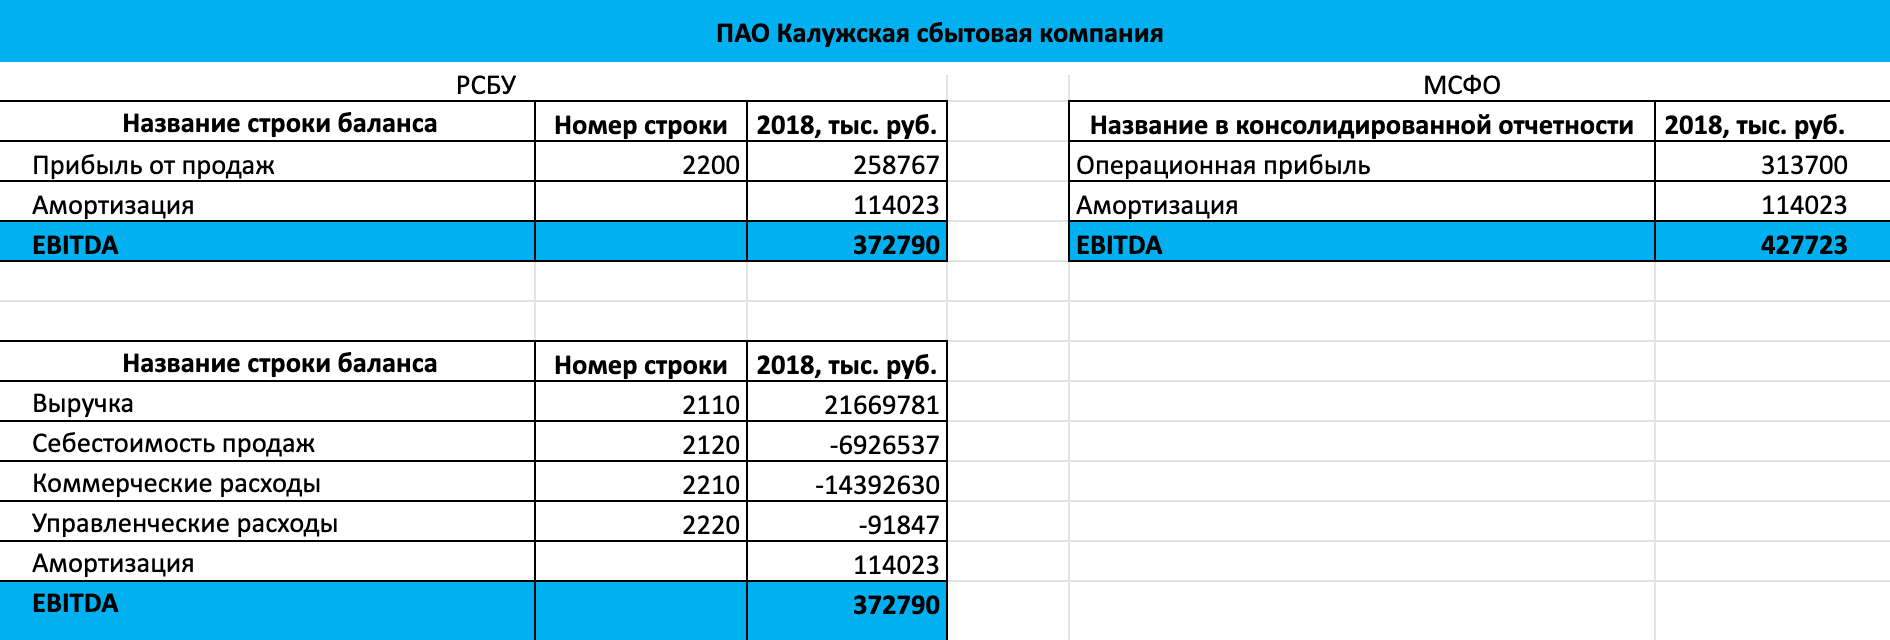 Расчет EBITDA по МСФО и по РСБУ за 2018 год для ПАО «Калужская сбытовая компания»